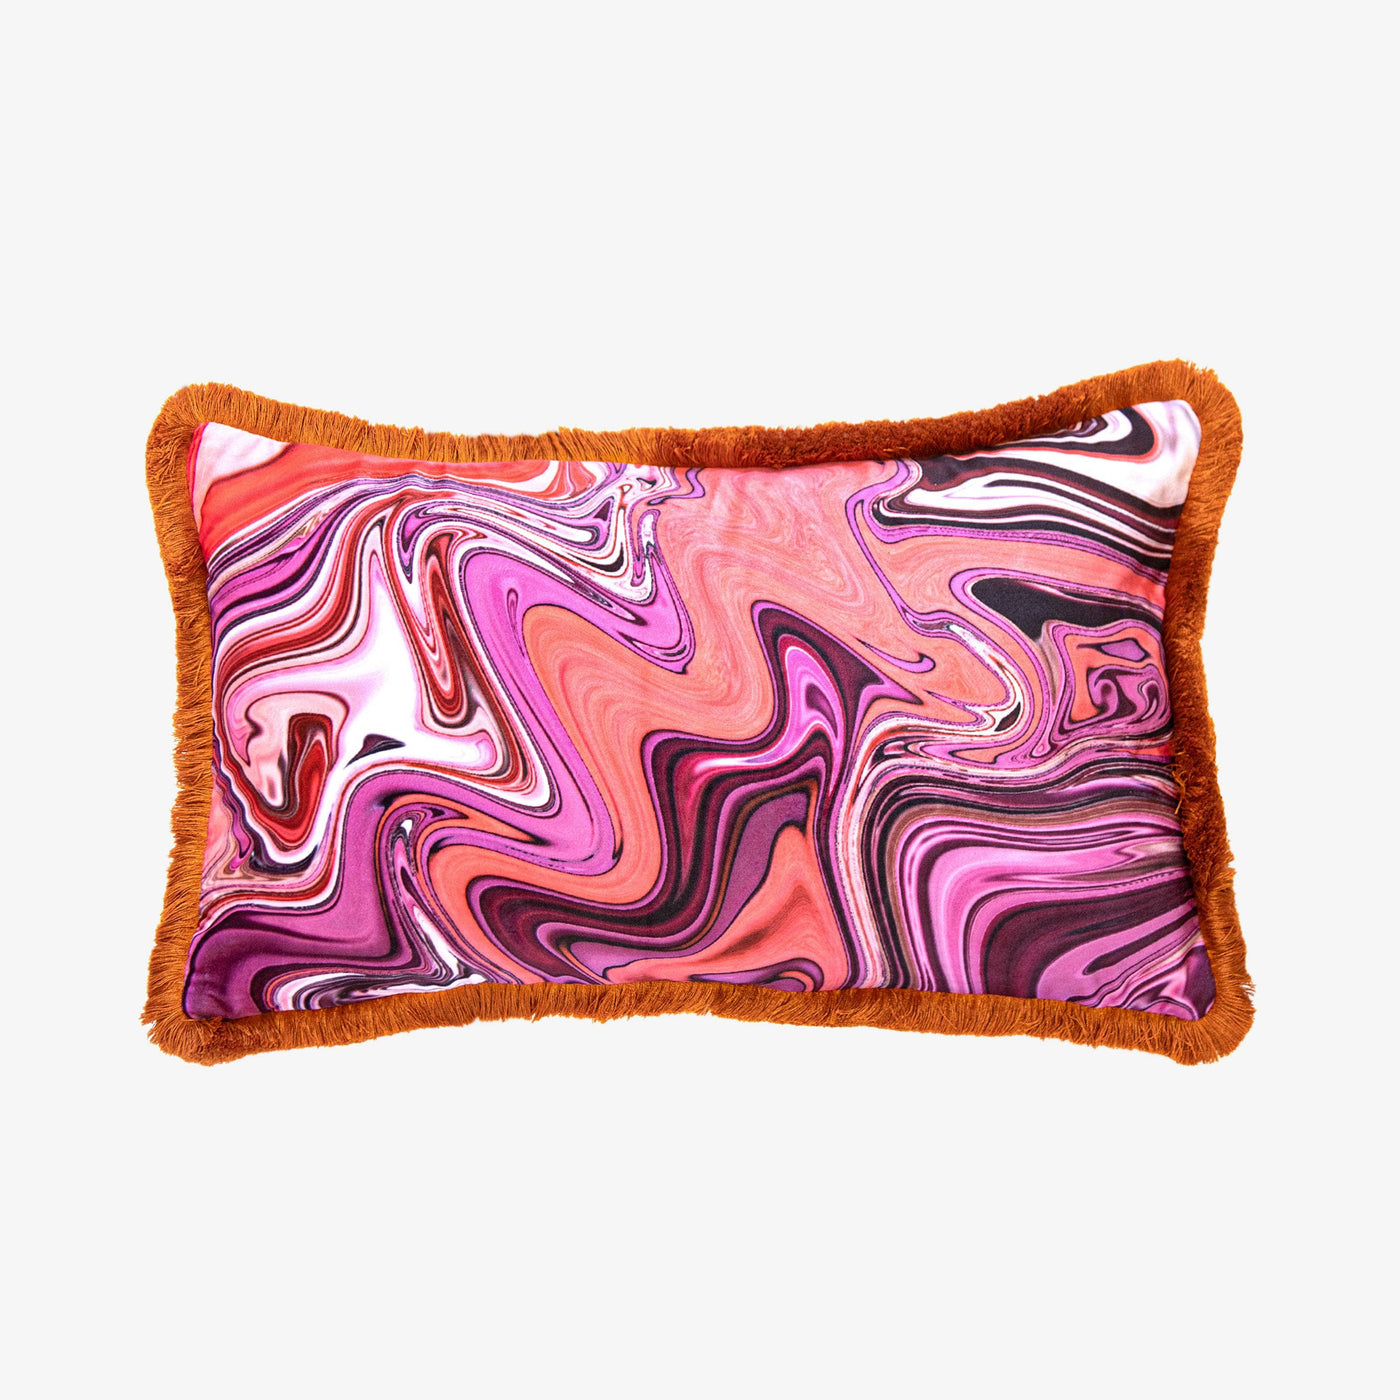 Pinkus Marble Cushion, Orange Fringe, Multicoloured, 30x50 cm Cushions sazy.com